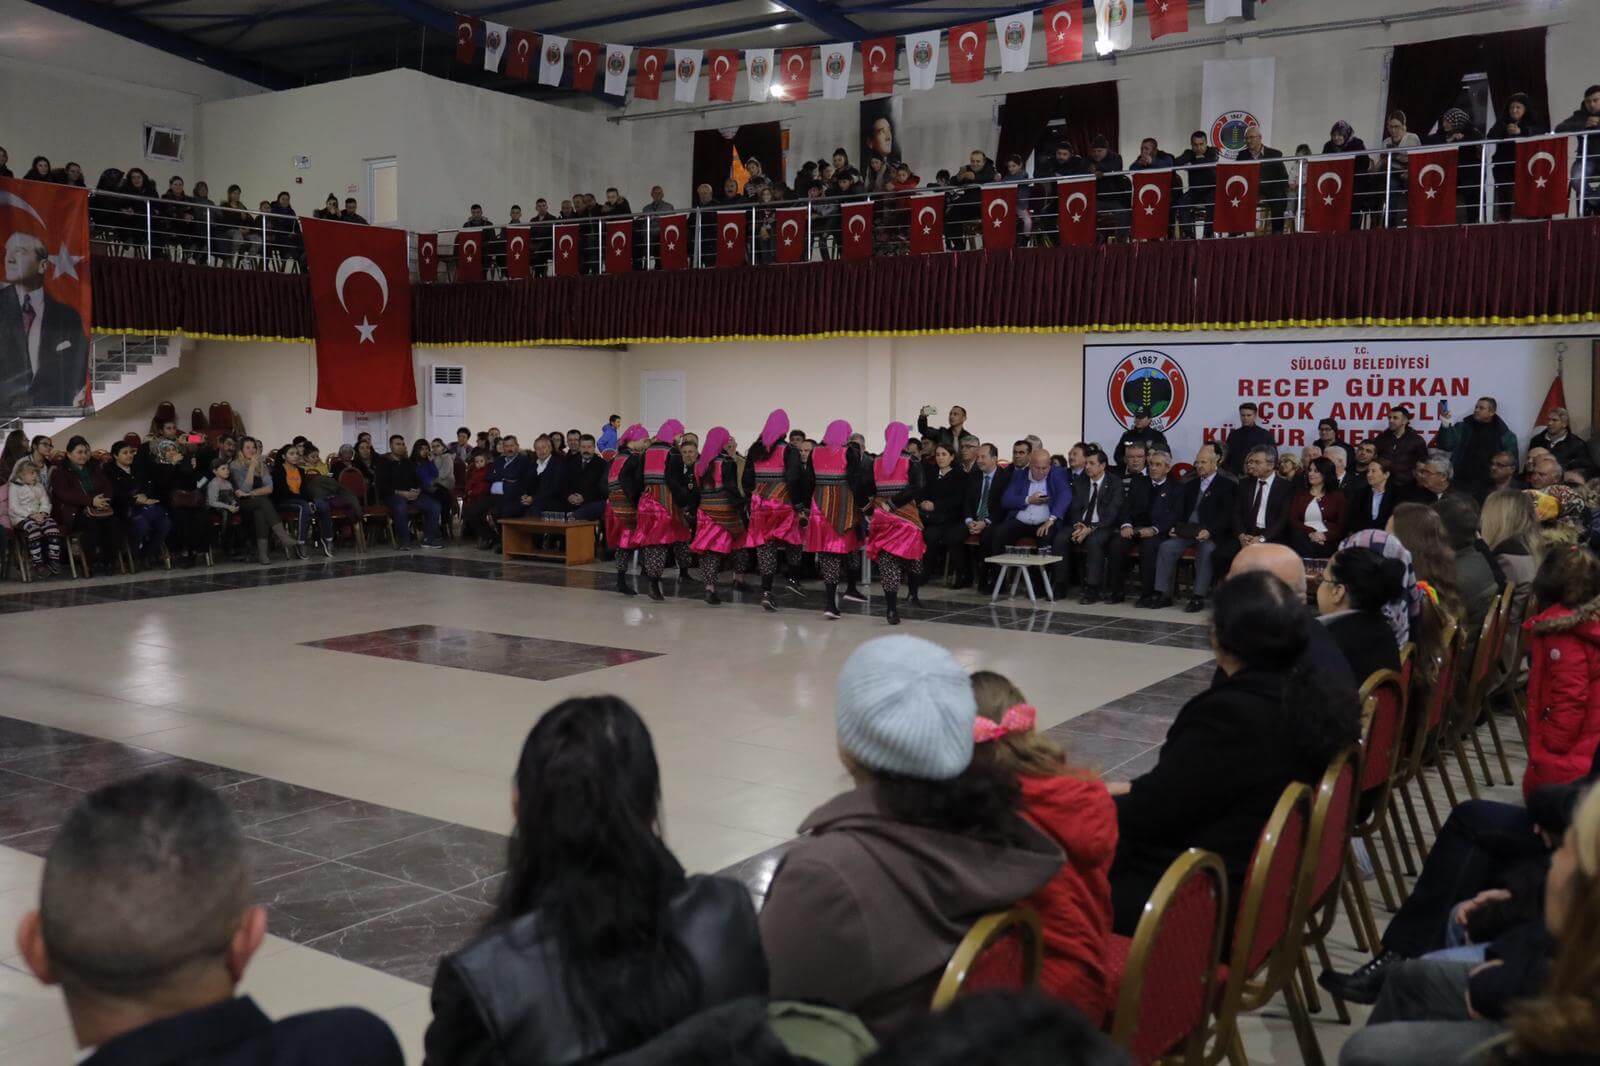 Kültür Merkezi'ne Recep Gürkan'ın Adı Verildi